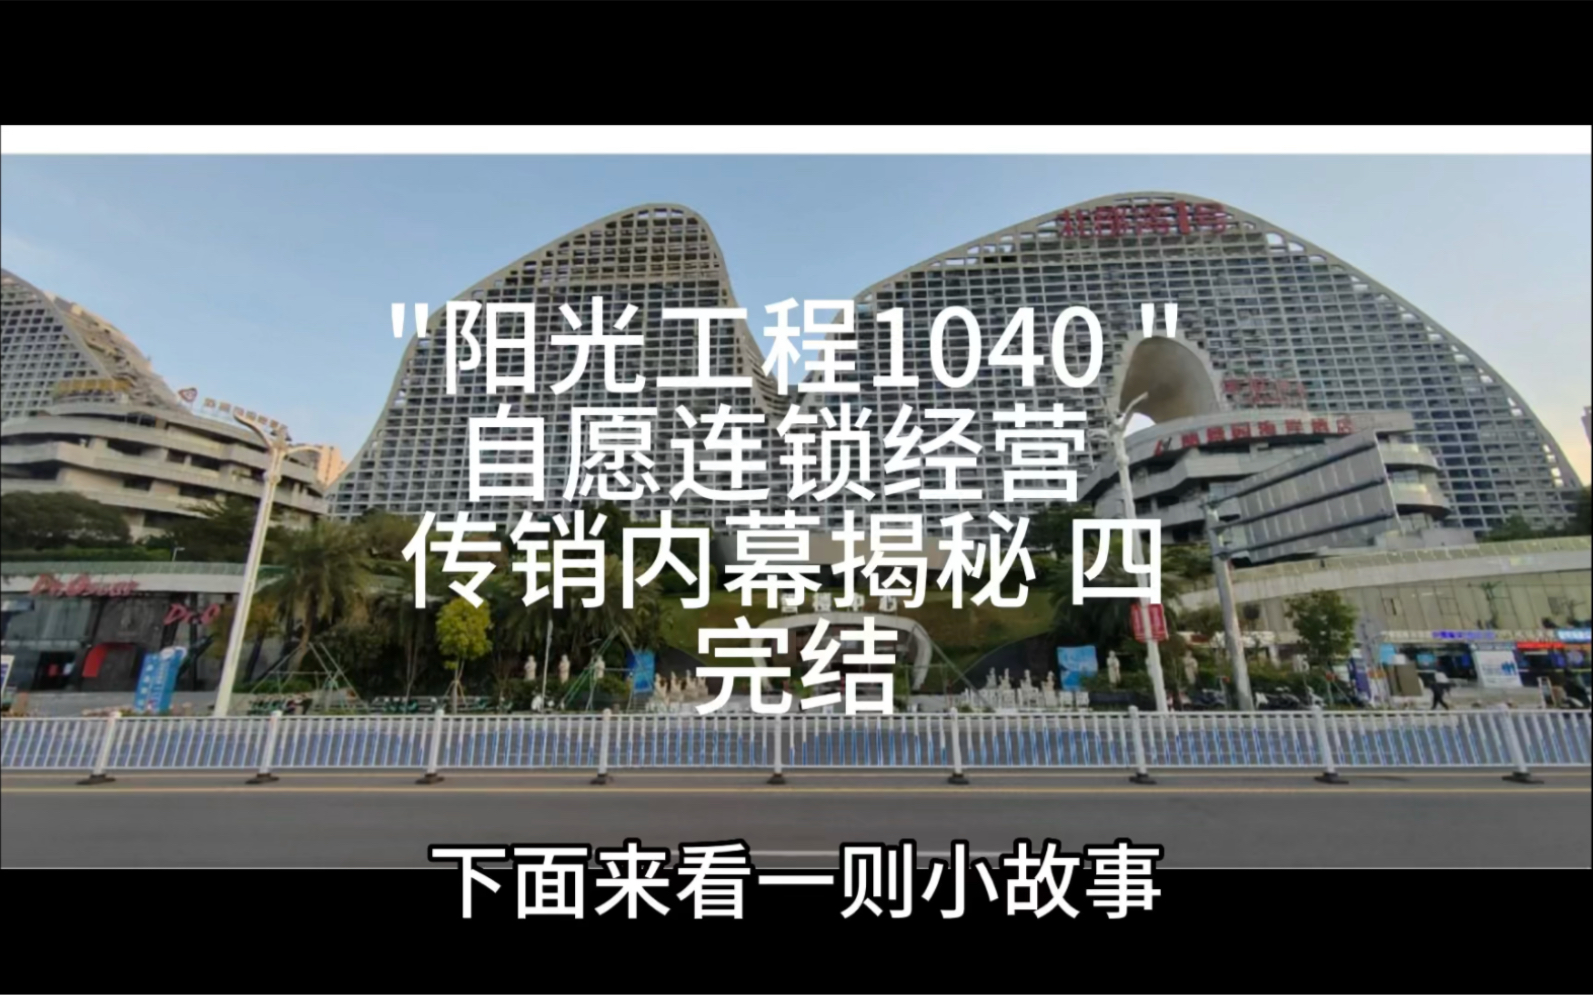 武汉1040阳光工程图片